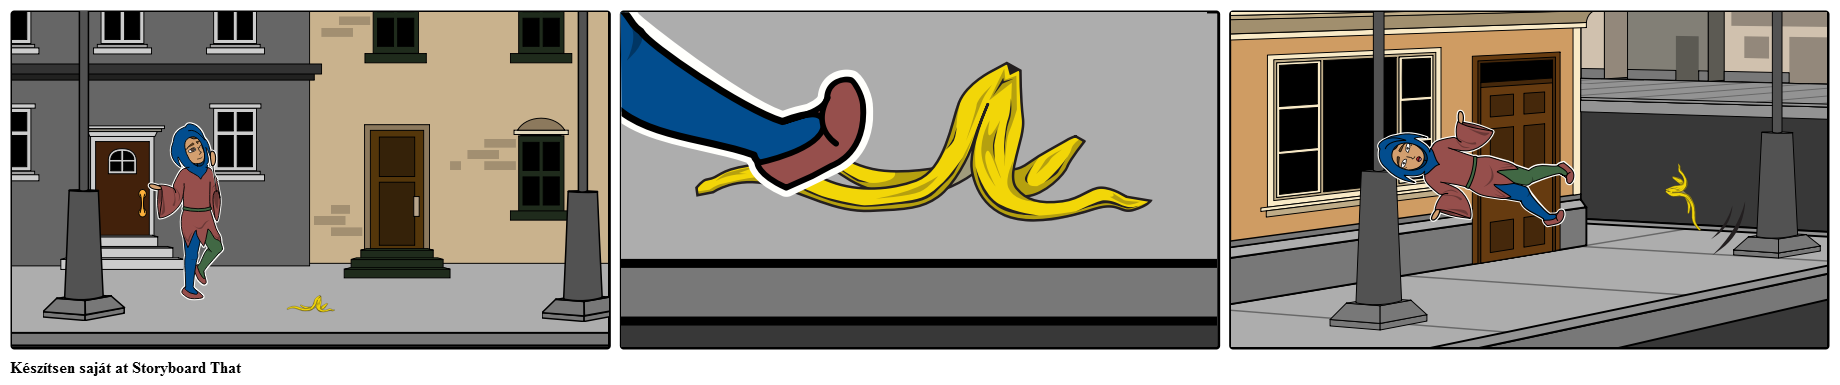 Jester csúszik banánhéjon